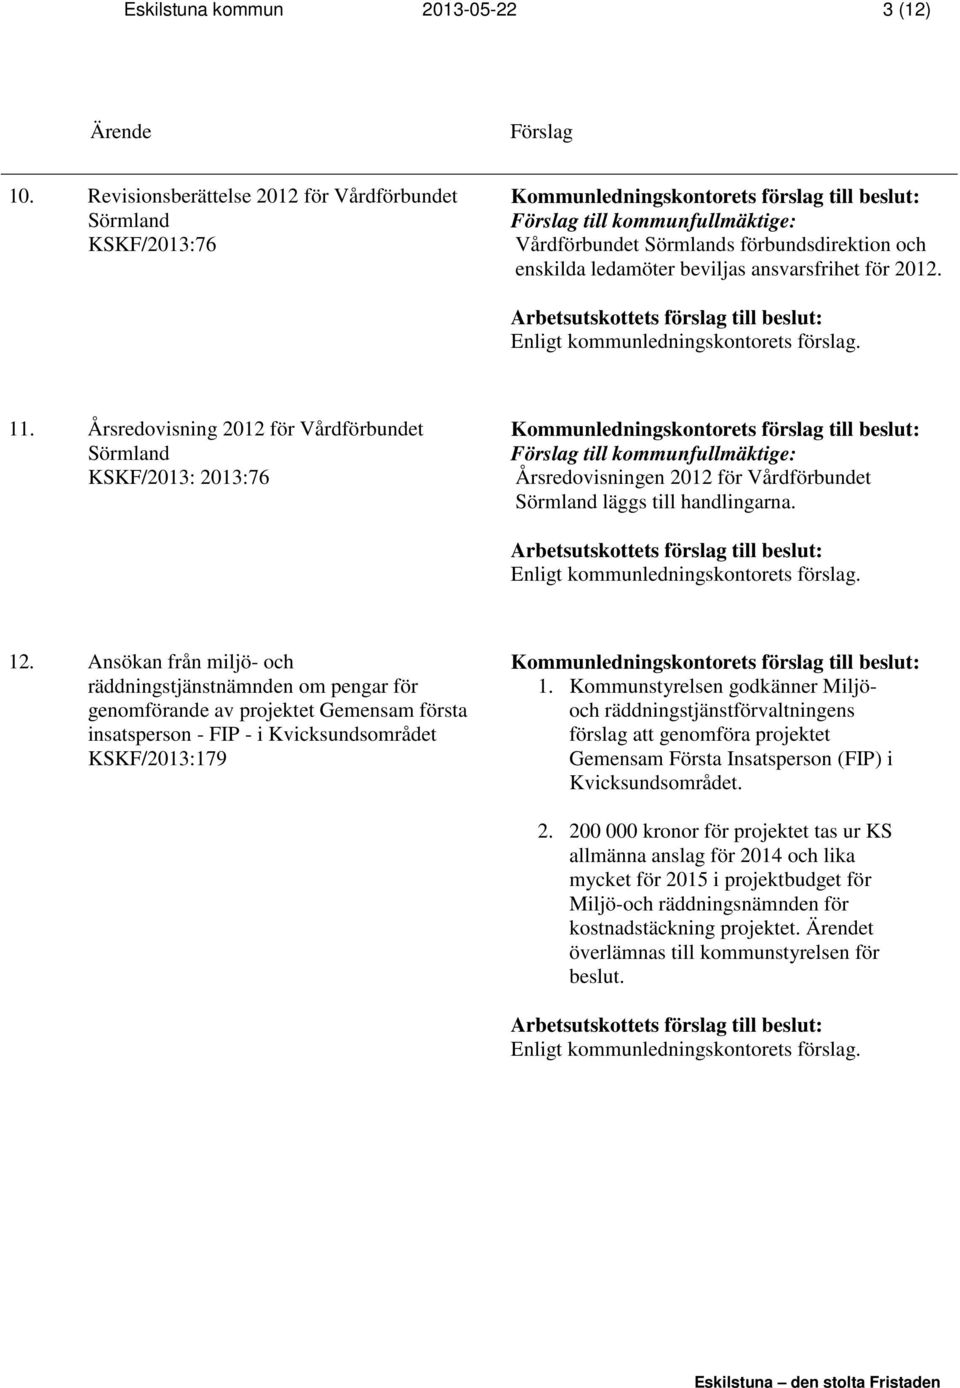 Årsredovisning 2012 för Vårdförbundet Sörmland KSKF/2013: 2013:76 Årsredovisningen 2012 för Vårdförbundet Sörmland läggs till handlingarna. 12.